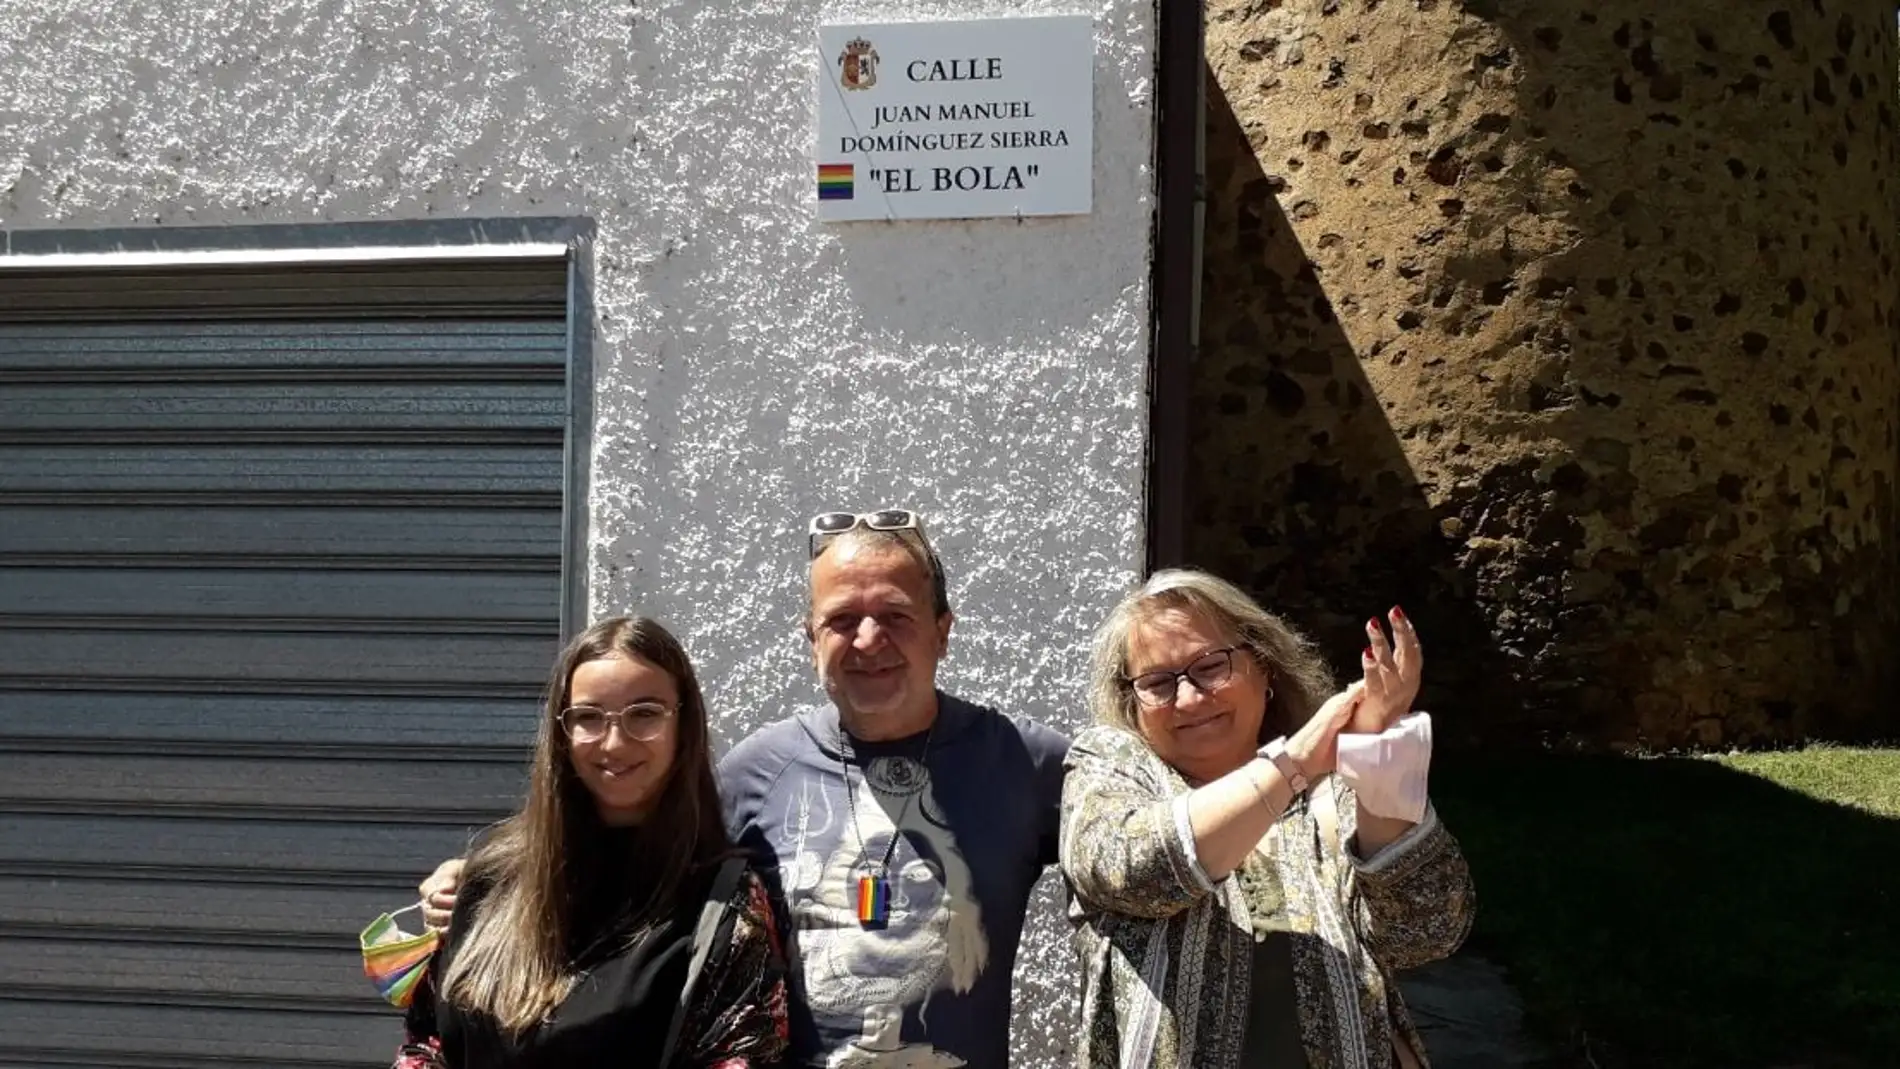 Cáceres reconoce la figura de Juan Manuel Domínguez Sierra 'El Bola' dando su nombre a una calle en el barrio de San Blas